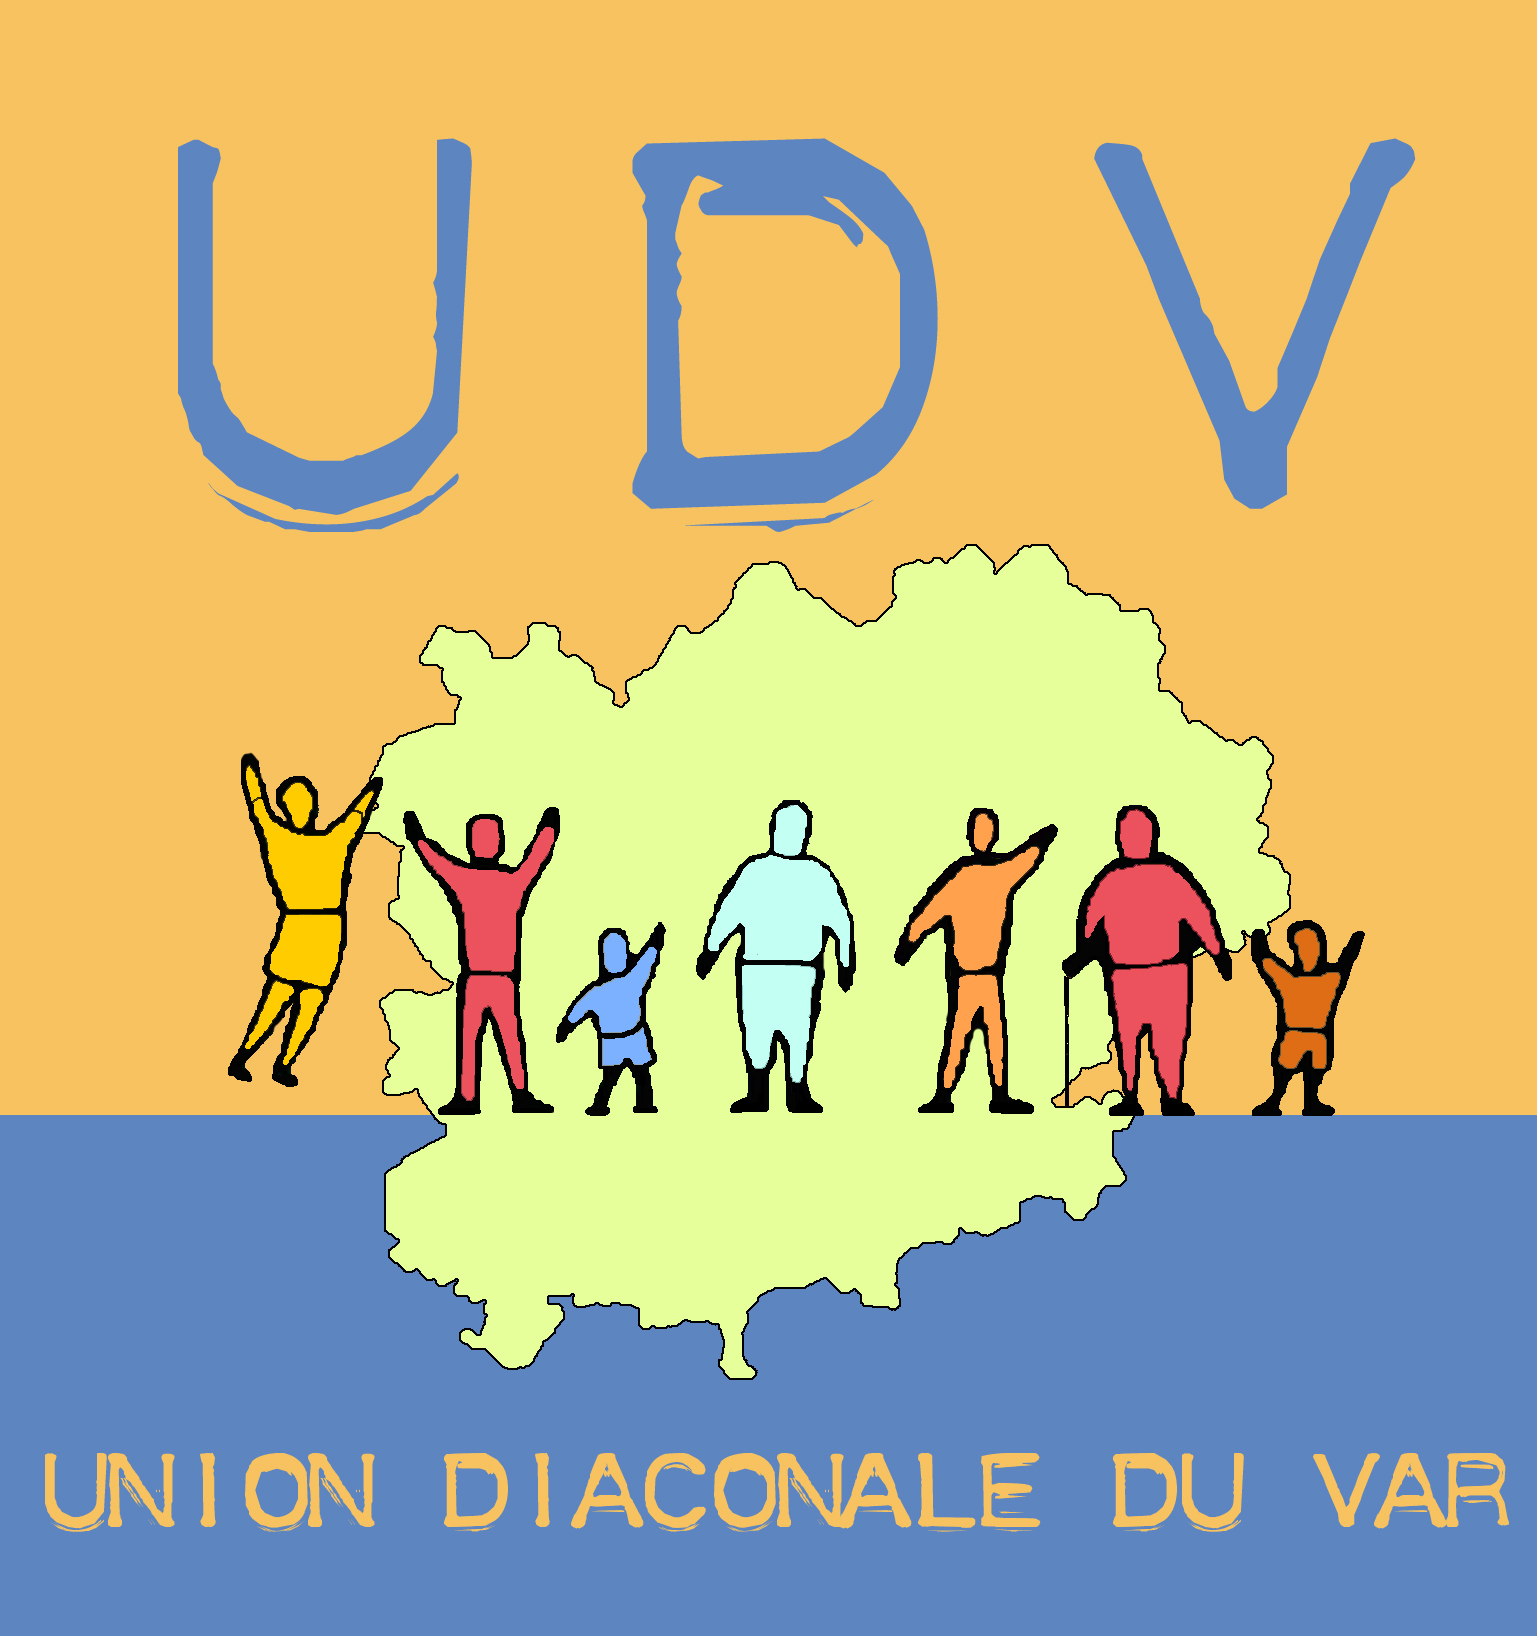 de nombreux événements sont annoncés dans le réseau UDV